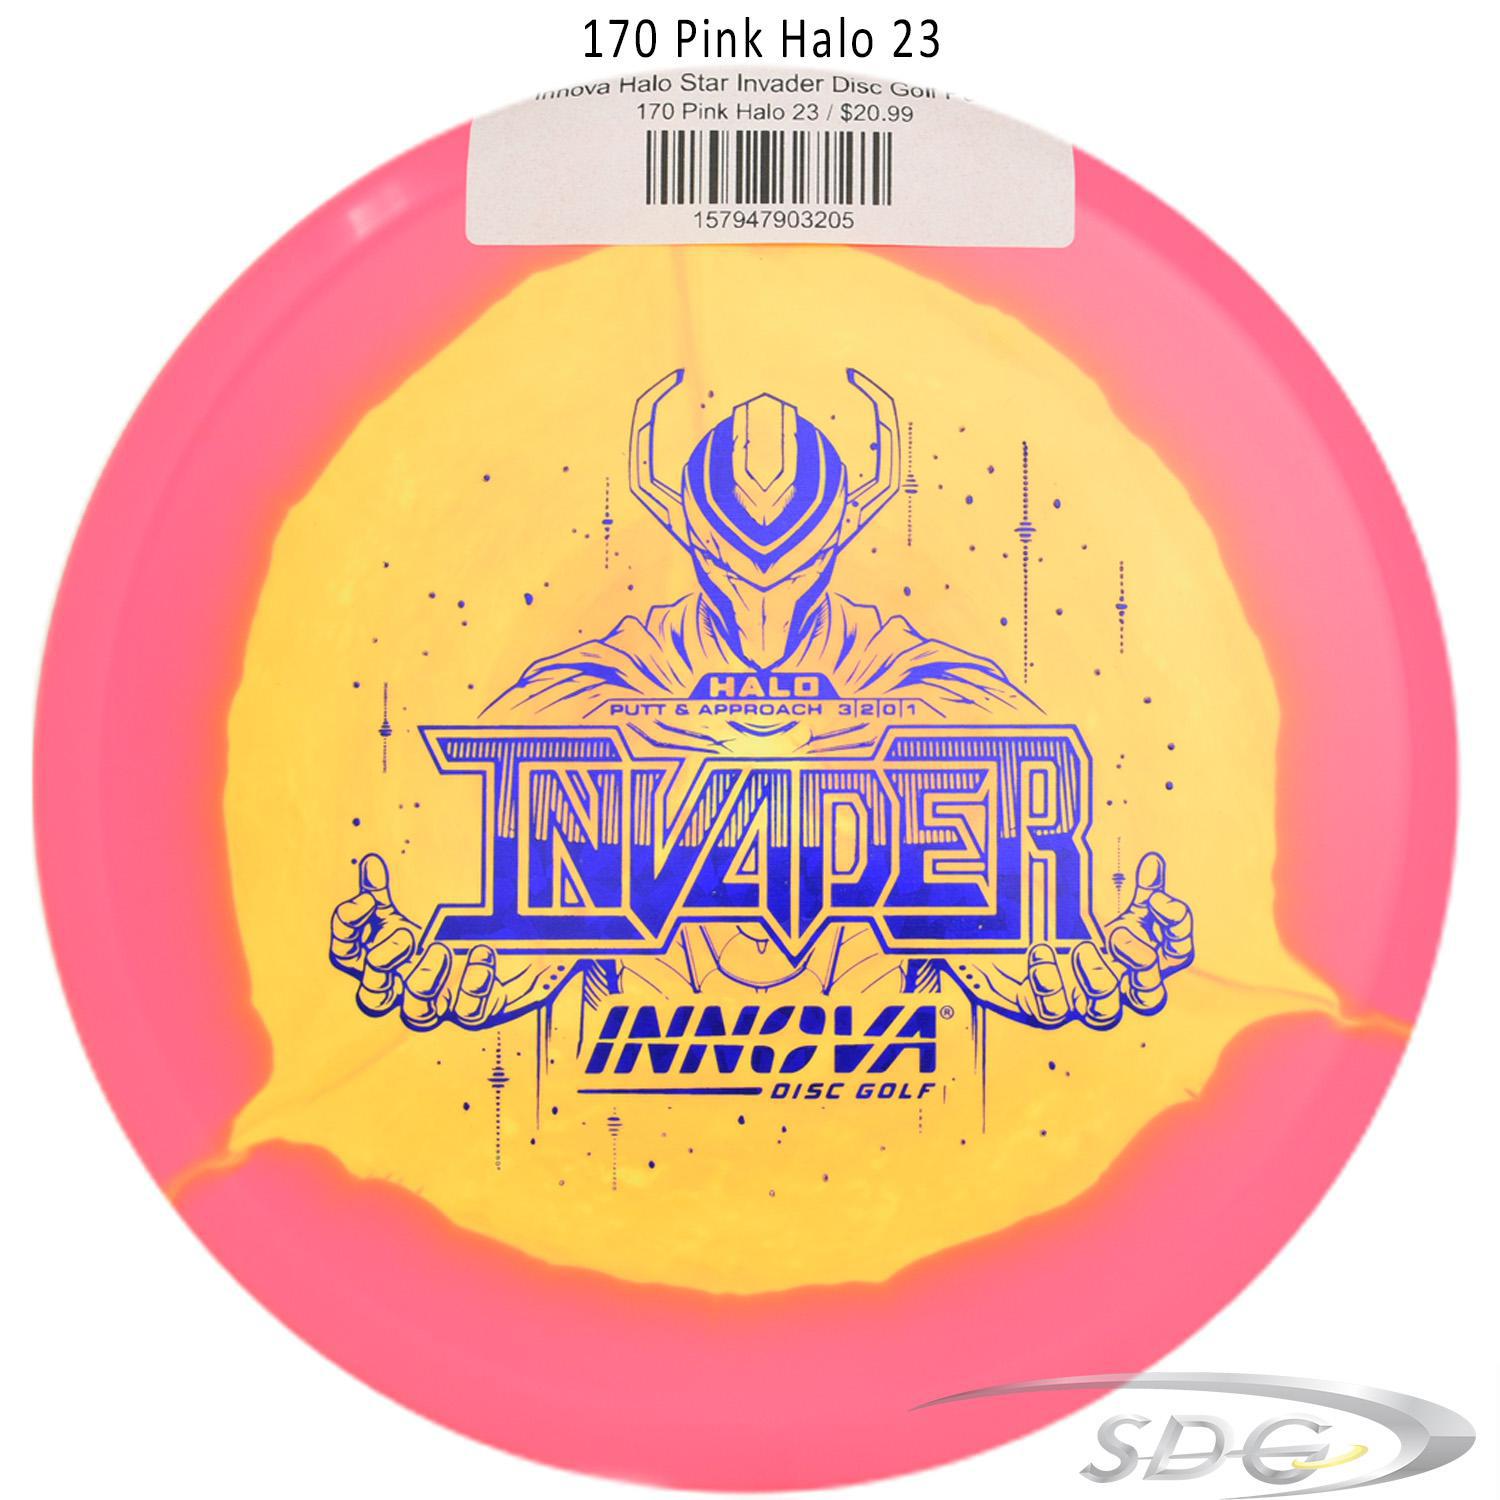 innova-halo-star-invader-disc-golf-putter 170 Pink Halo 23 